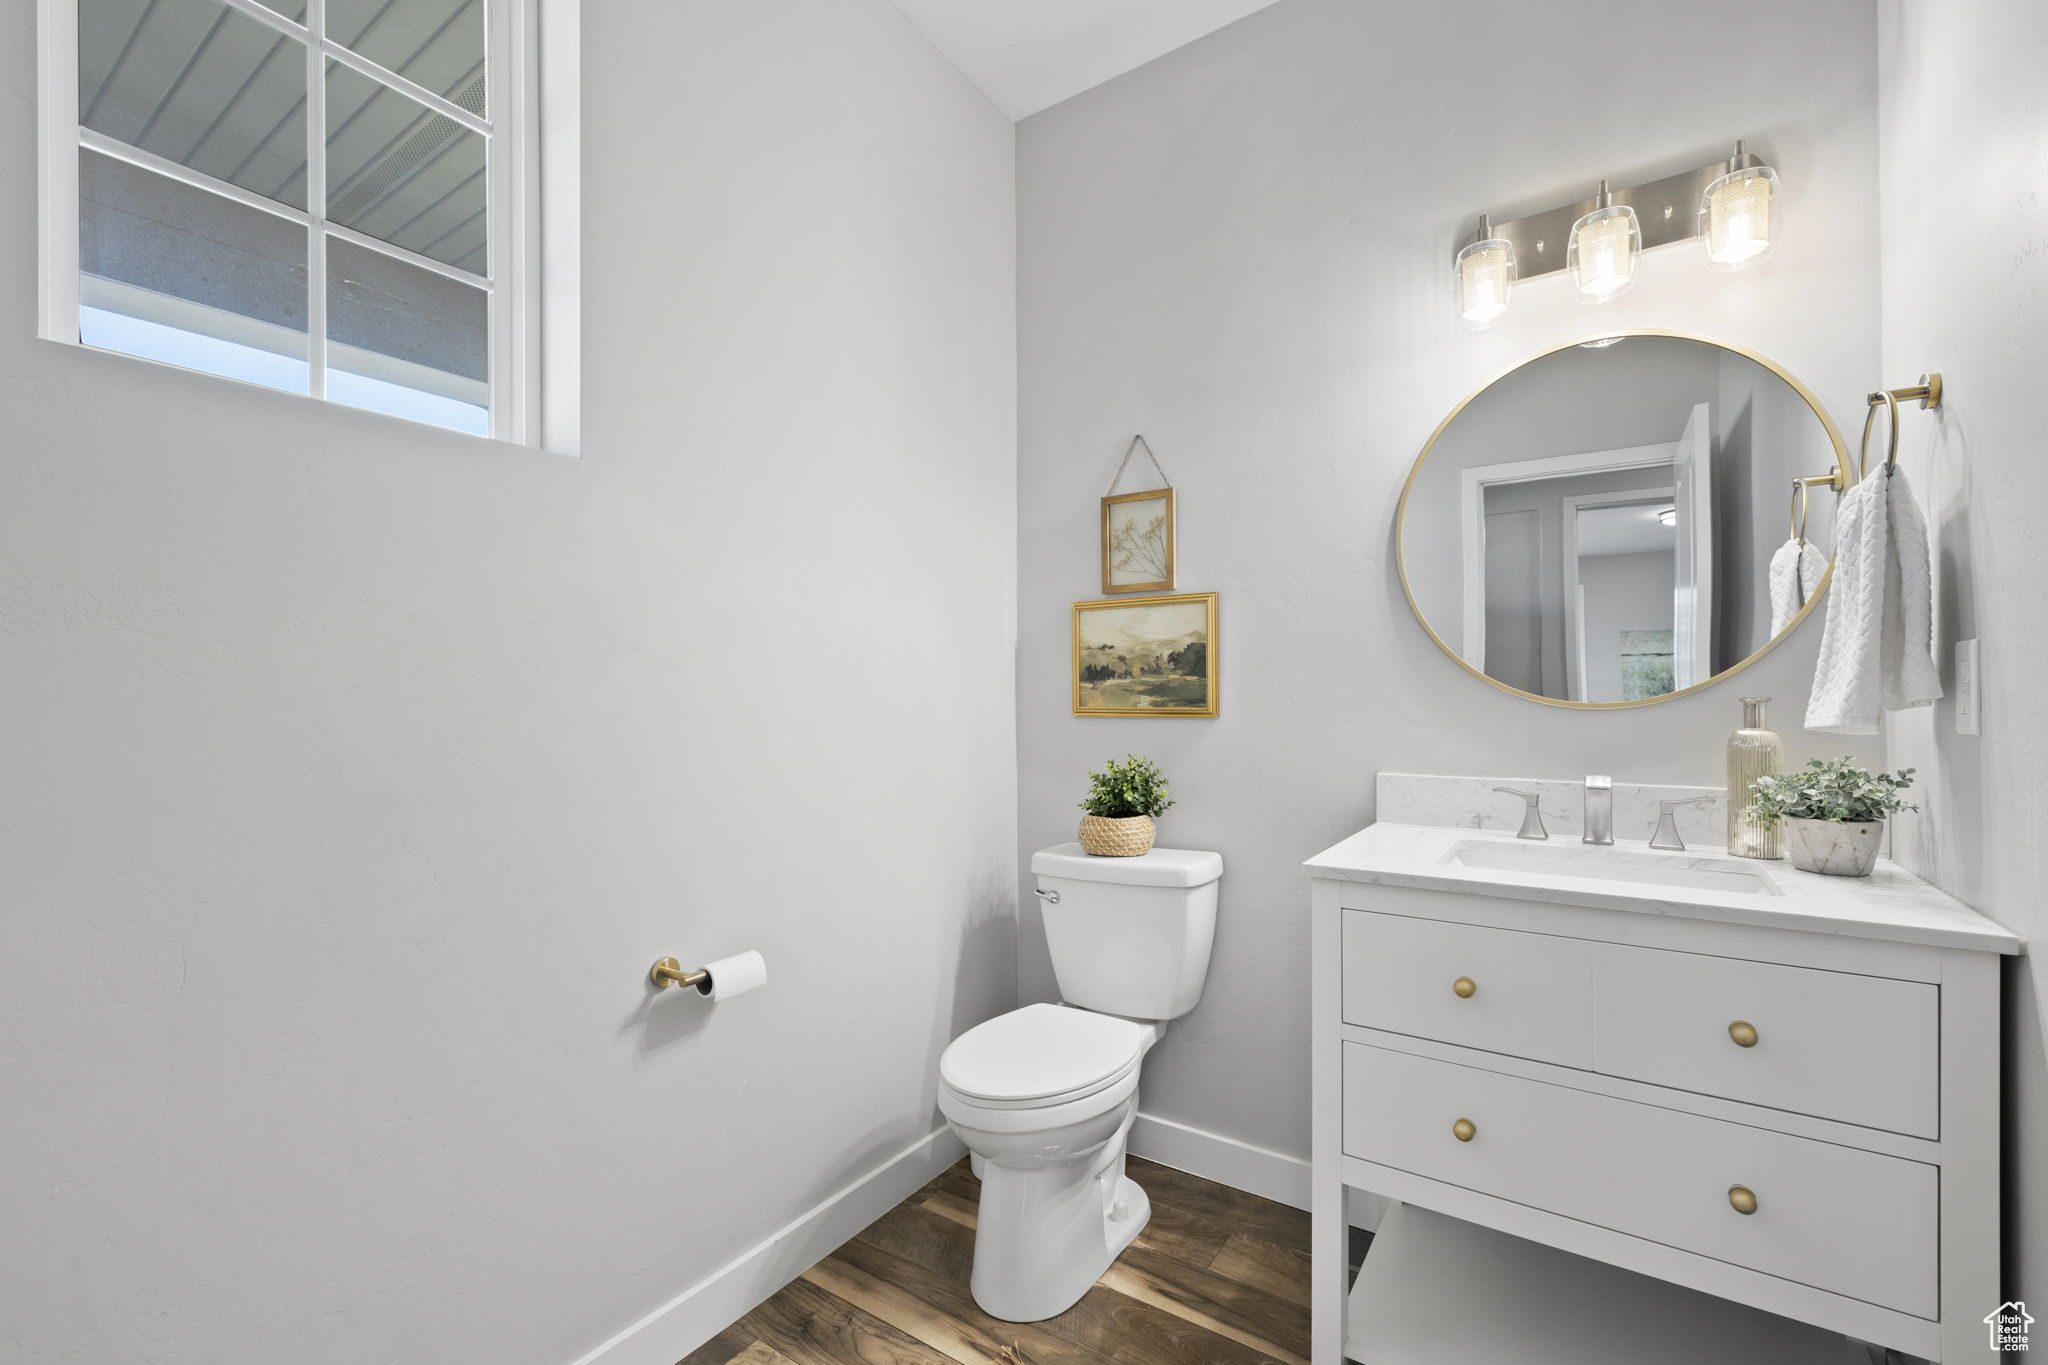 Bathroom with hardwood / wood-style floors, oversized vanity, and toilet